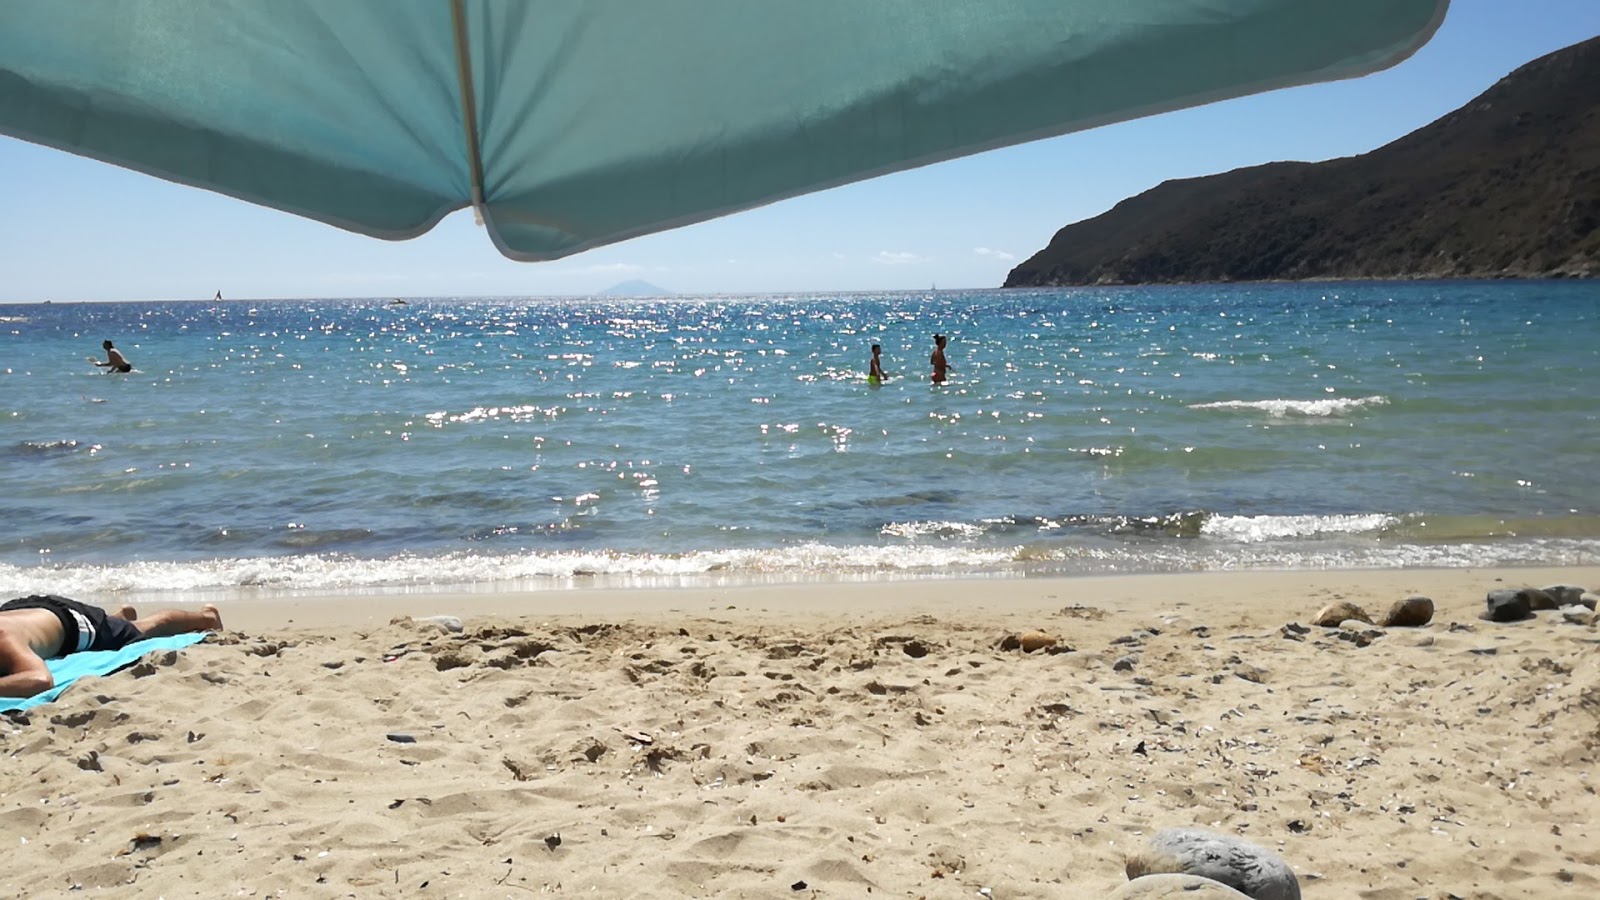 Foto de Spiaggia Di Laconella ubicado en área natural